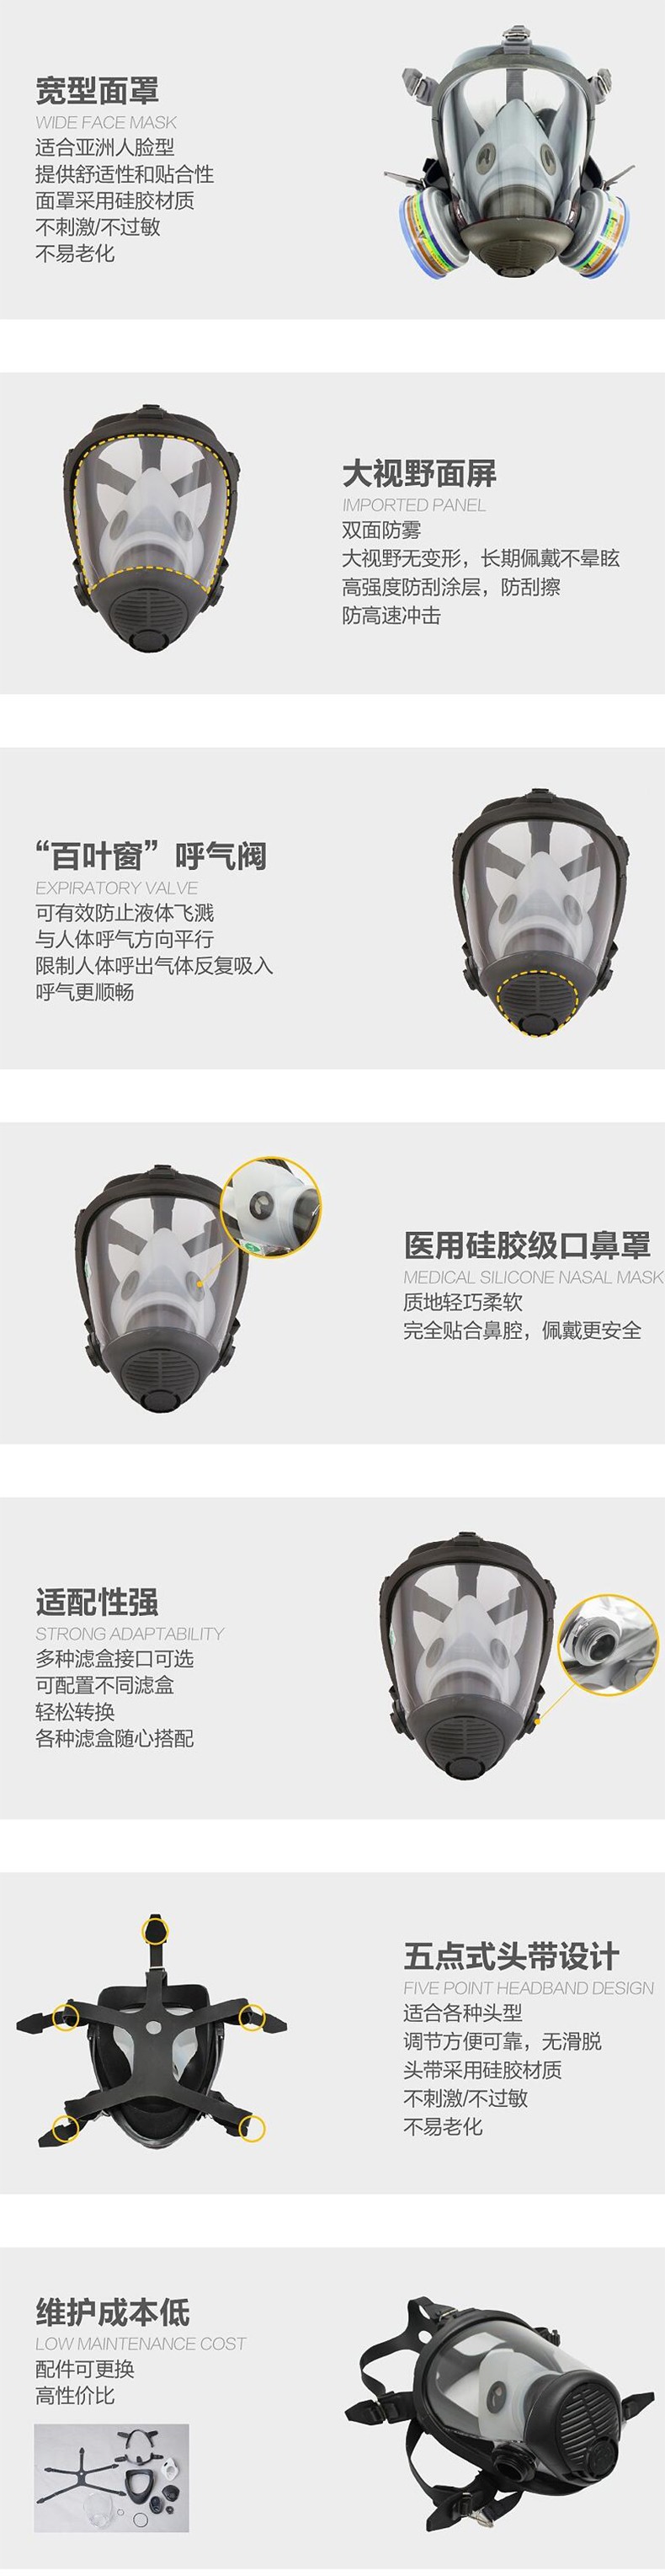 华信威保小金罩XP300S防尘防毒过滤全面罩图片4